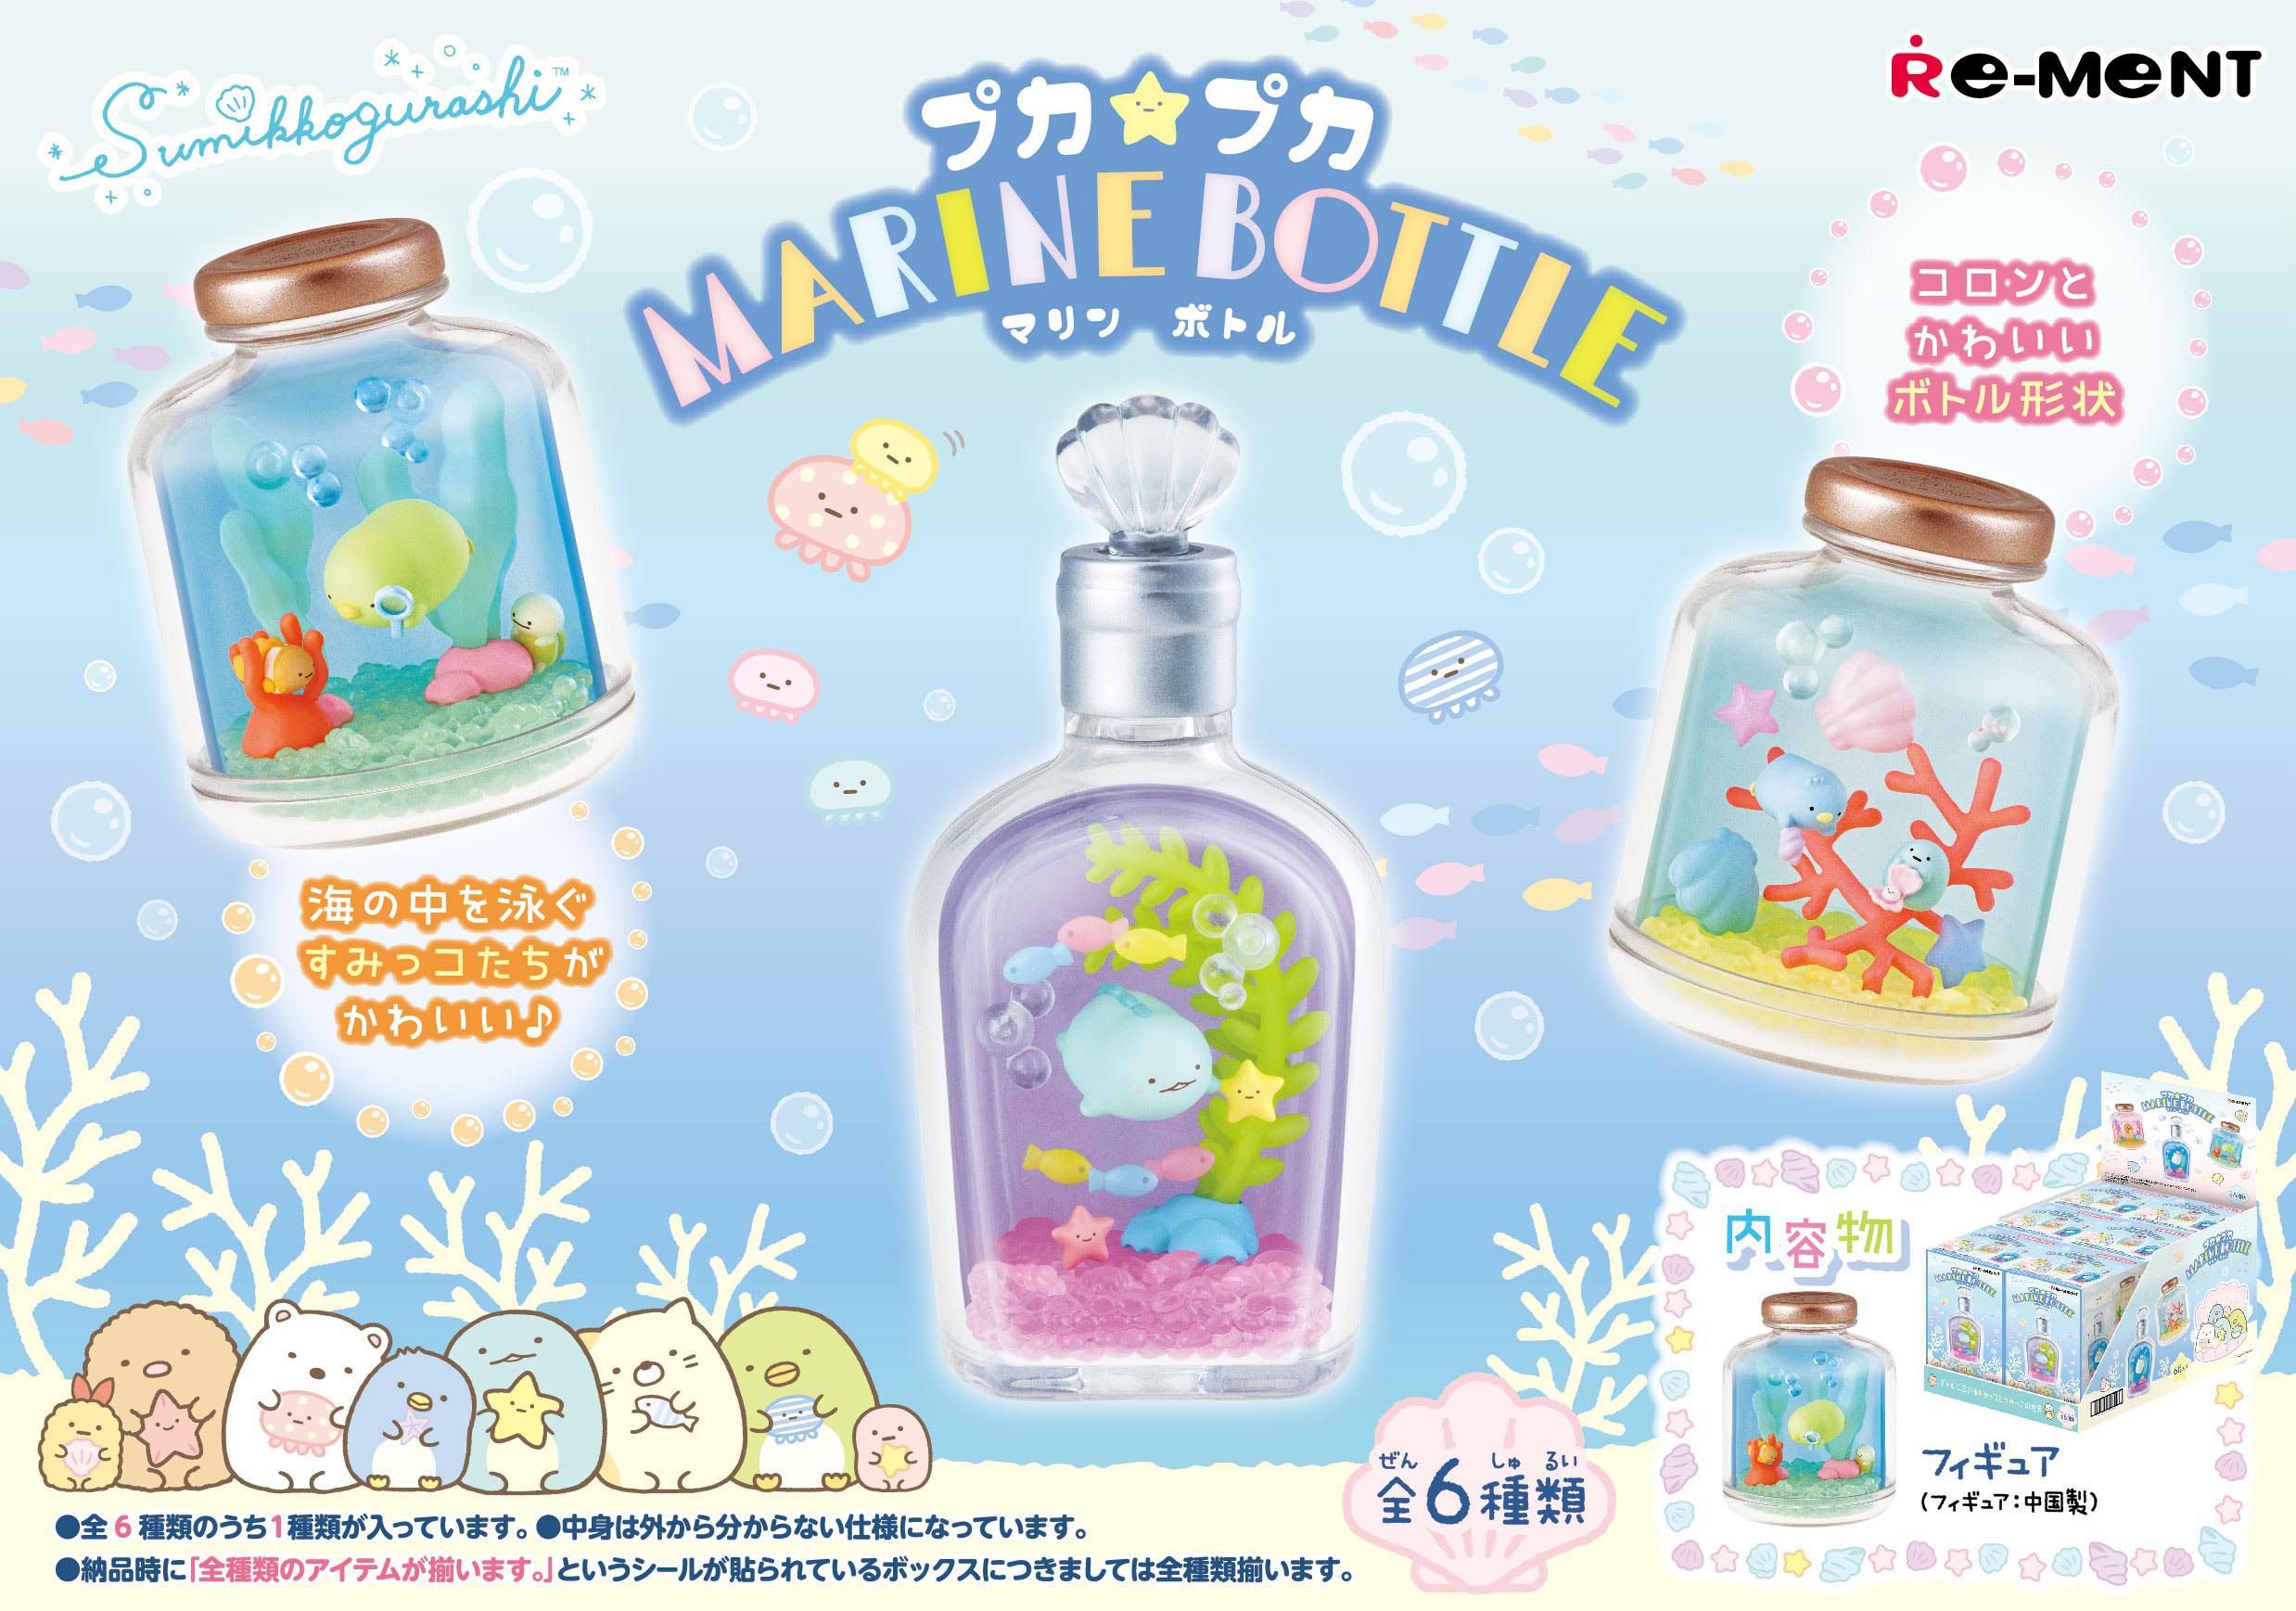 Re-Ment Sumikkogurashi Puka Puka Marine Bottle Complete BOX 6pcs